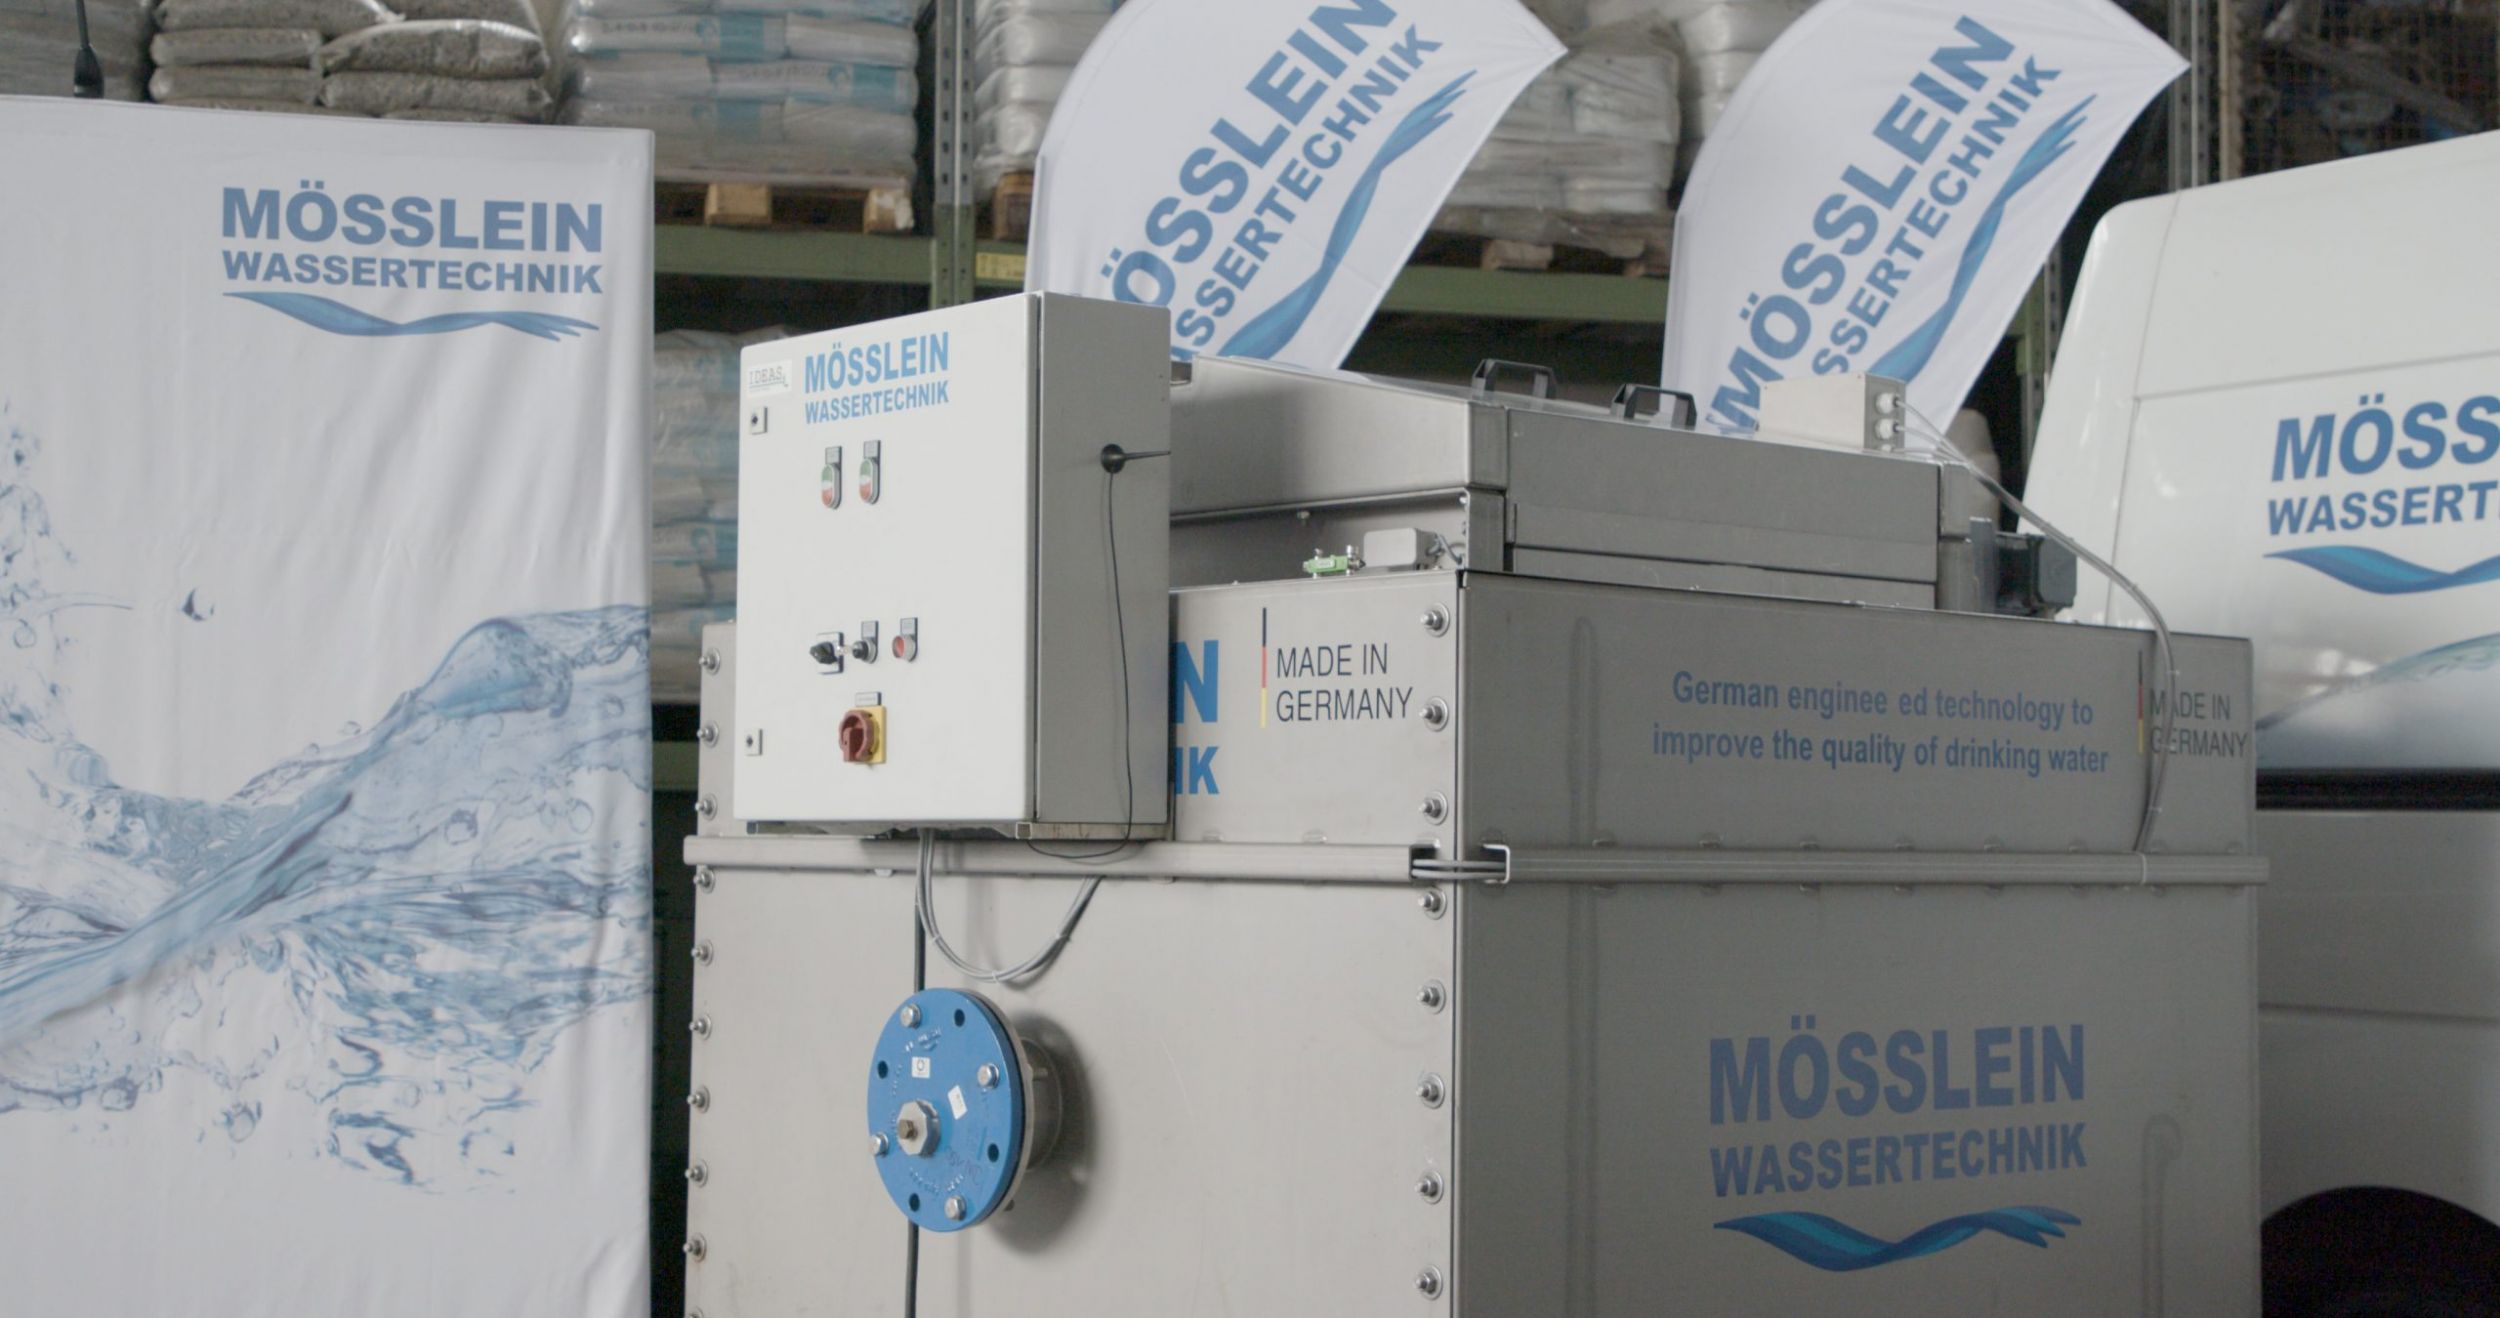 Die Firma Mösslein Wassertechnik hat eine Anlage für die Filtration von Wasser entwickelt. (Bild: Wago Kontakttechnik GmbH & Co. KG)